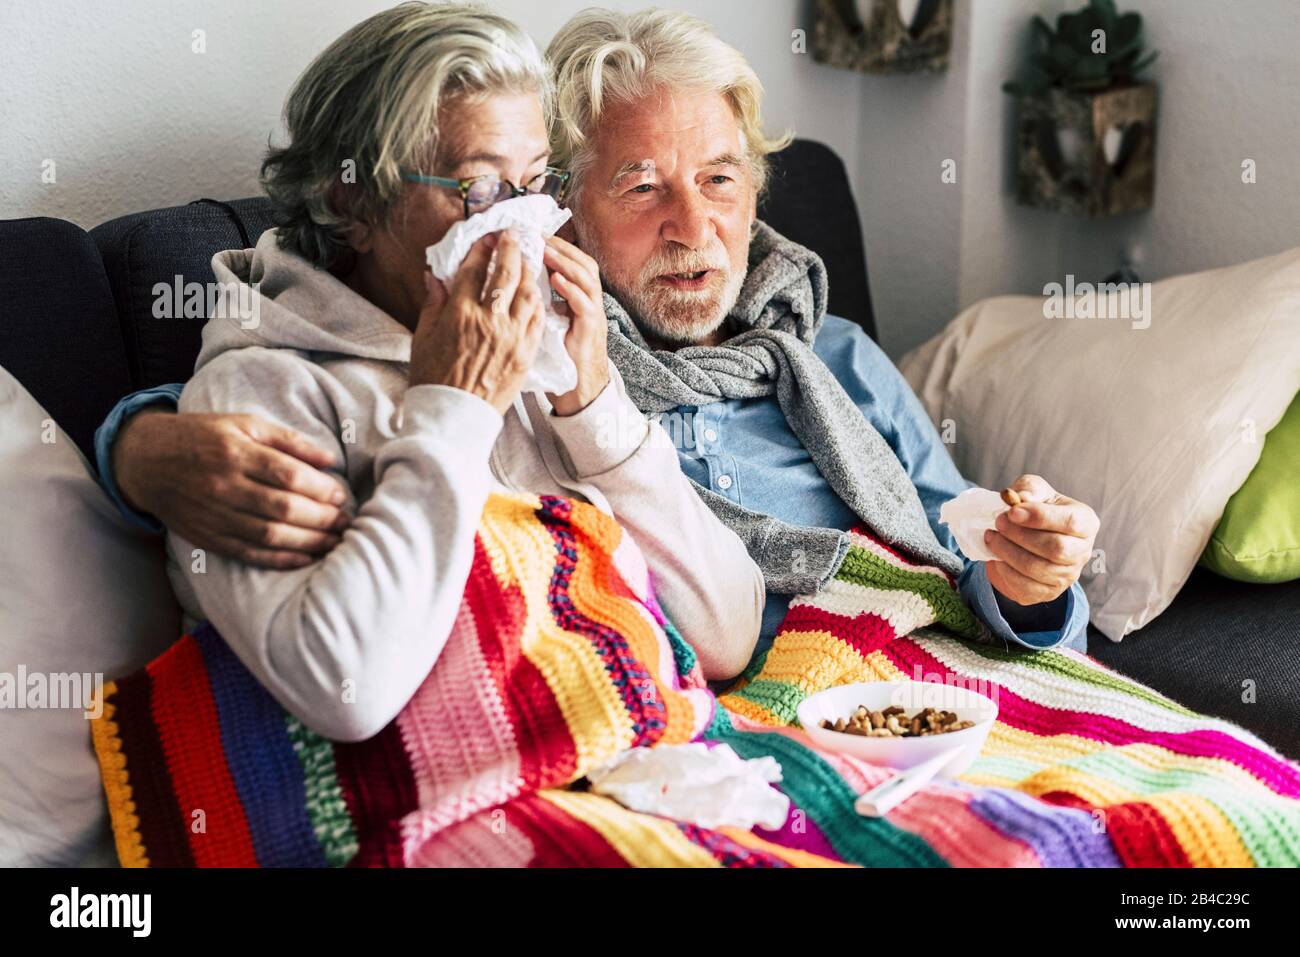 Coppia di anziani anziani a casa con malattia fredda invernale stagionale si siedono sul sof insieme per sempre - problemi di salute per uomo e donna pensionati con capelli bianchi Foto Stock